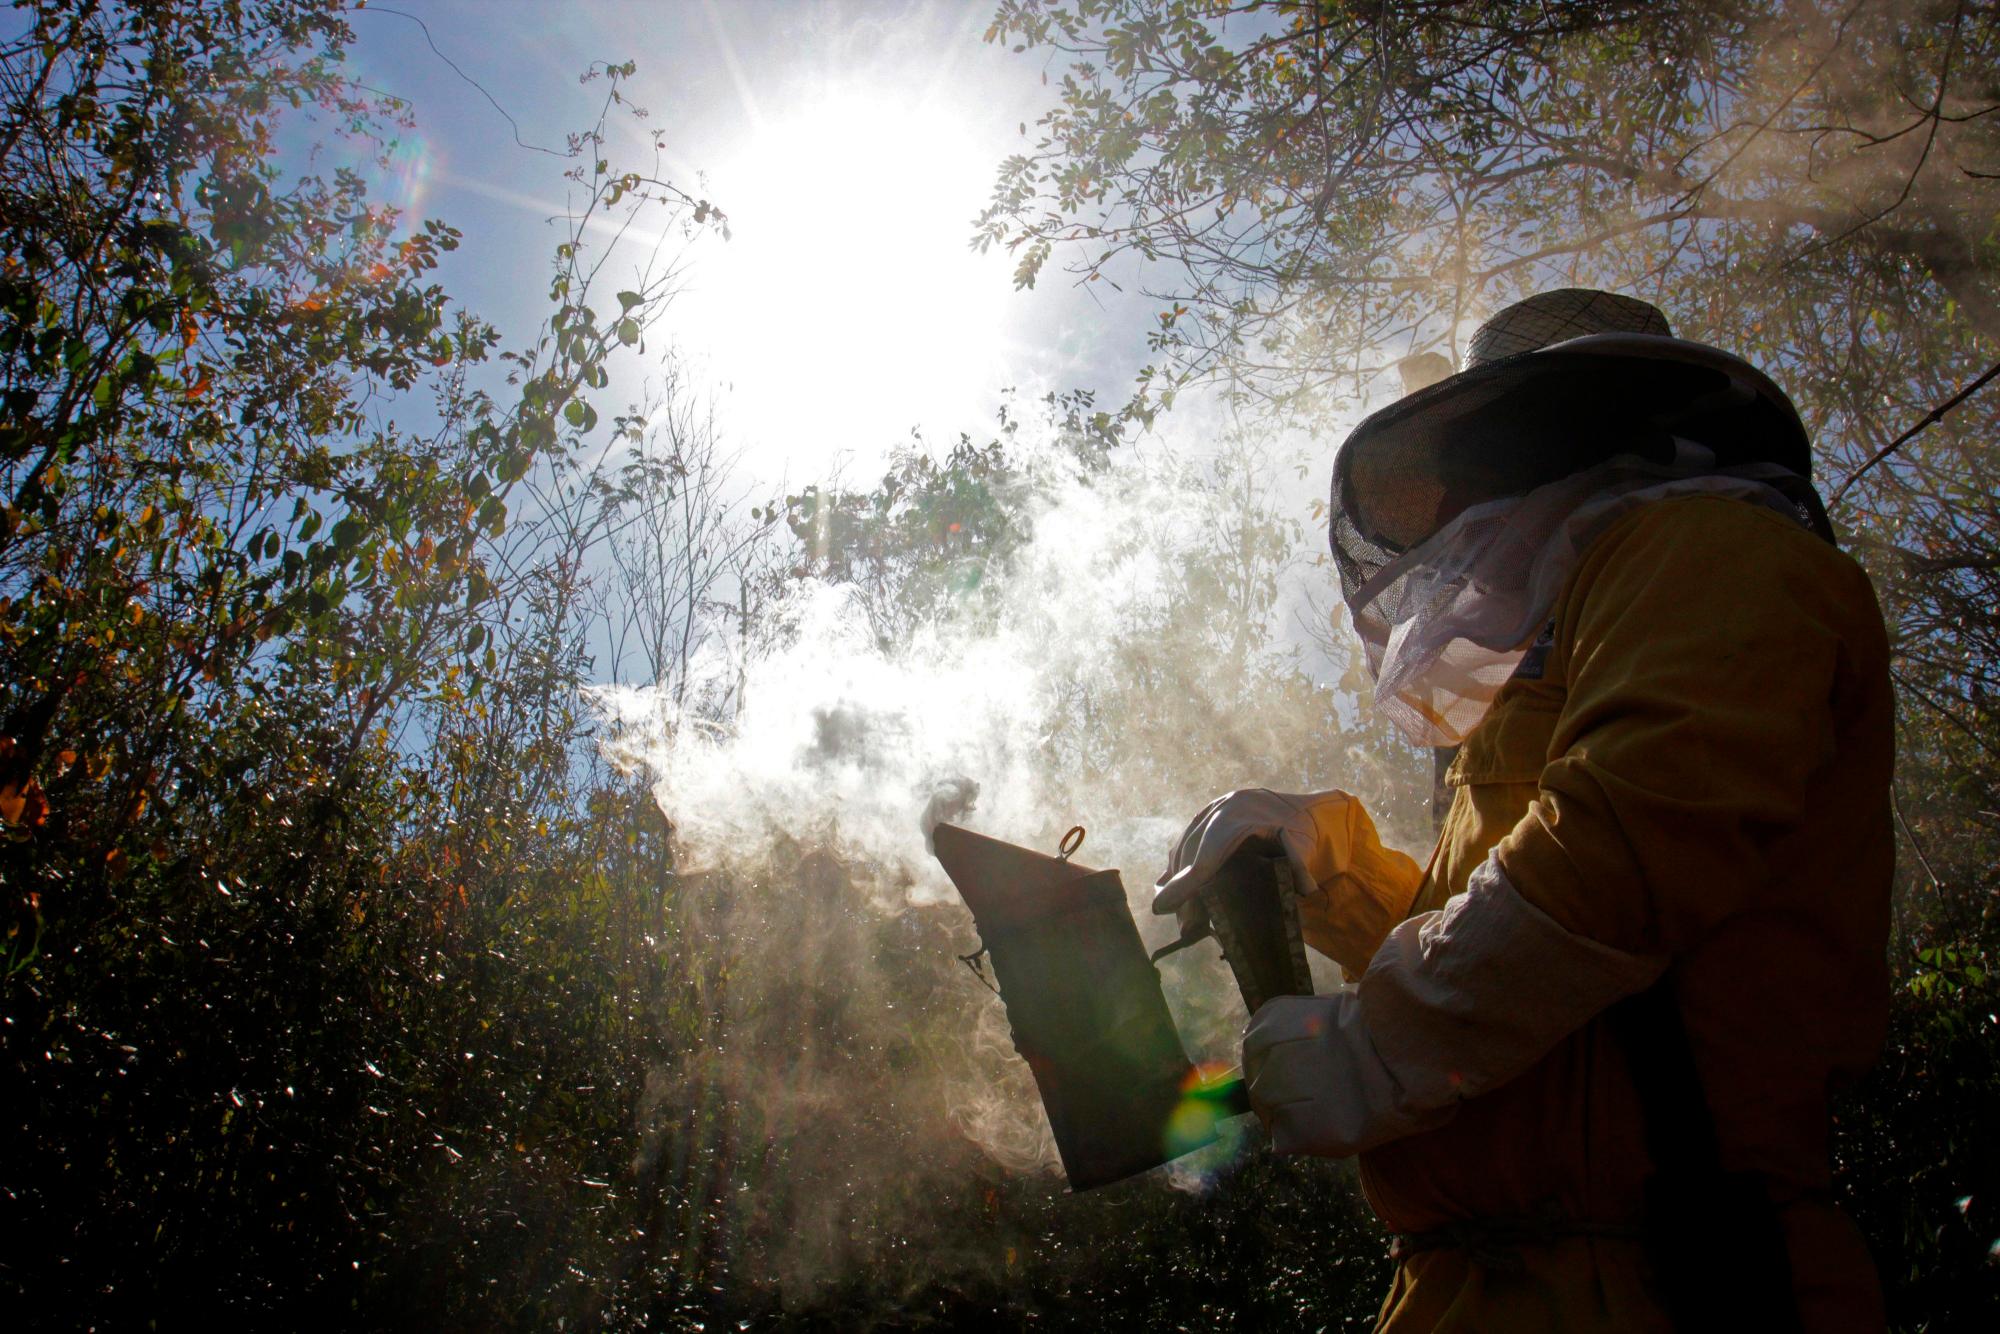 Apicultores de la agrupación Kanan Kaboob (cuidadores de abejas) mientras trabajan, en el poblado de Leona Vicario, en el estado mexicano de Quintana Roo (México). Leydi Pech, una de las apicultoras más antiguas de la región de Hopelchén, en el estado mexicano de Campeche.